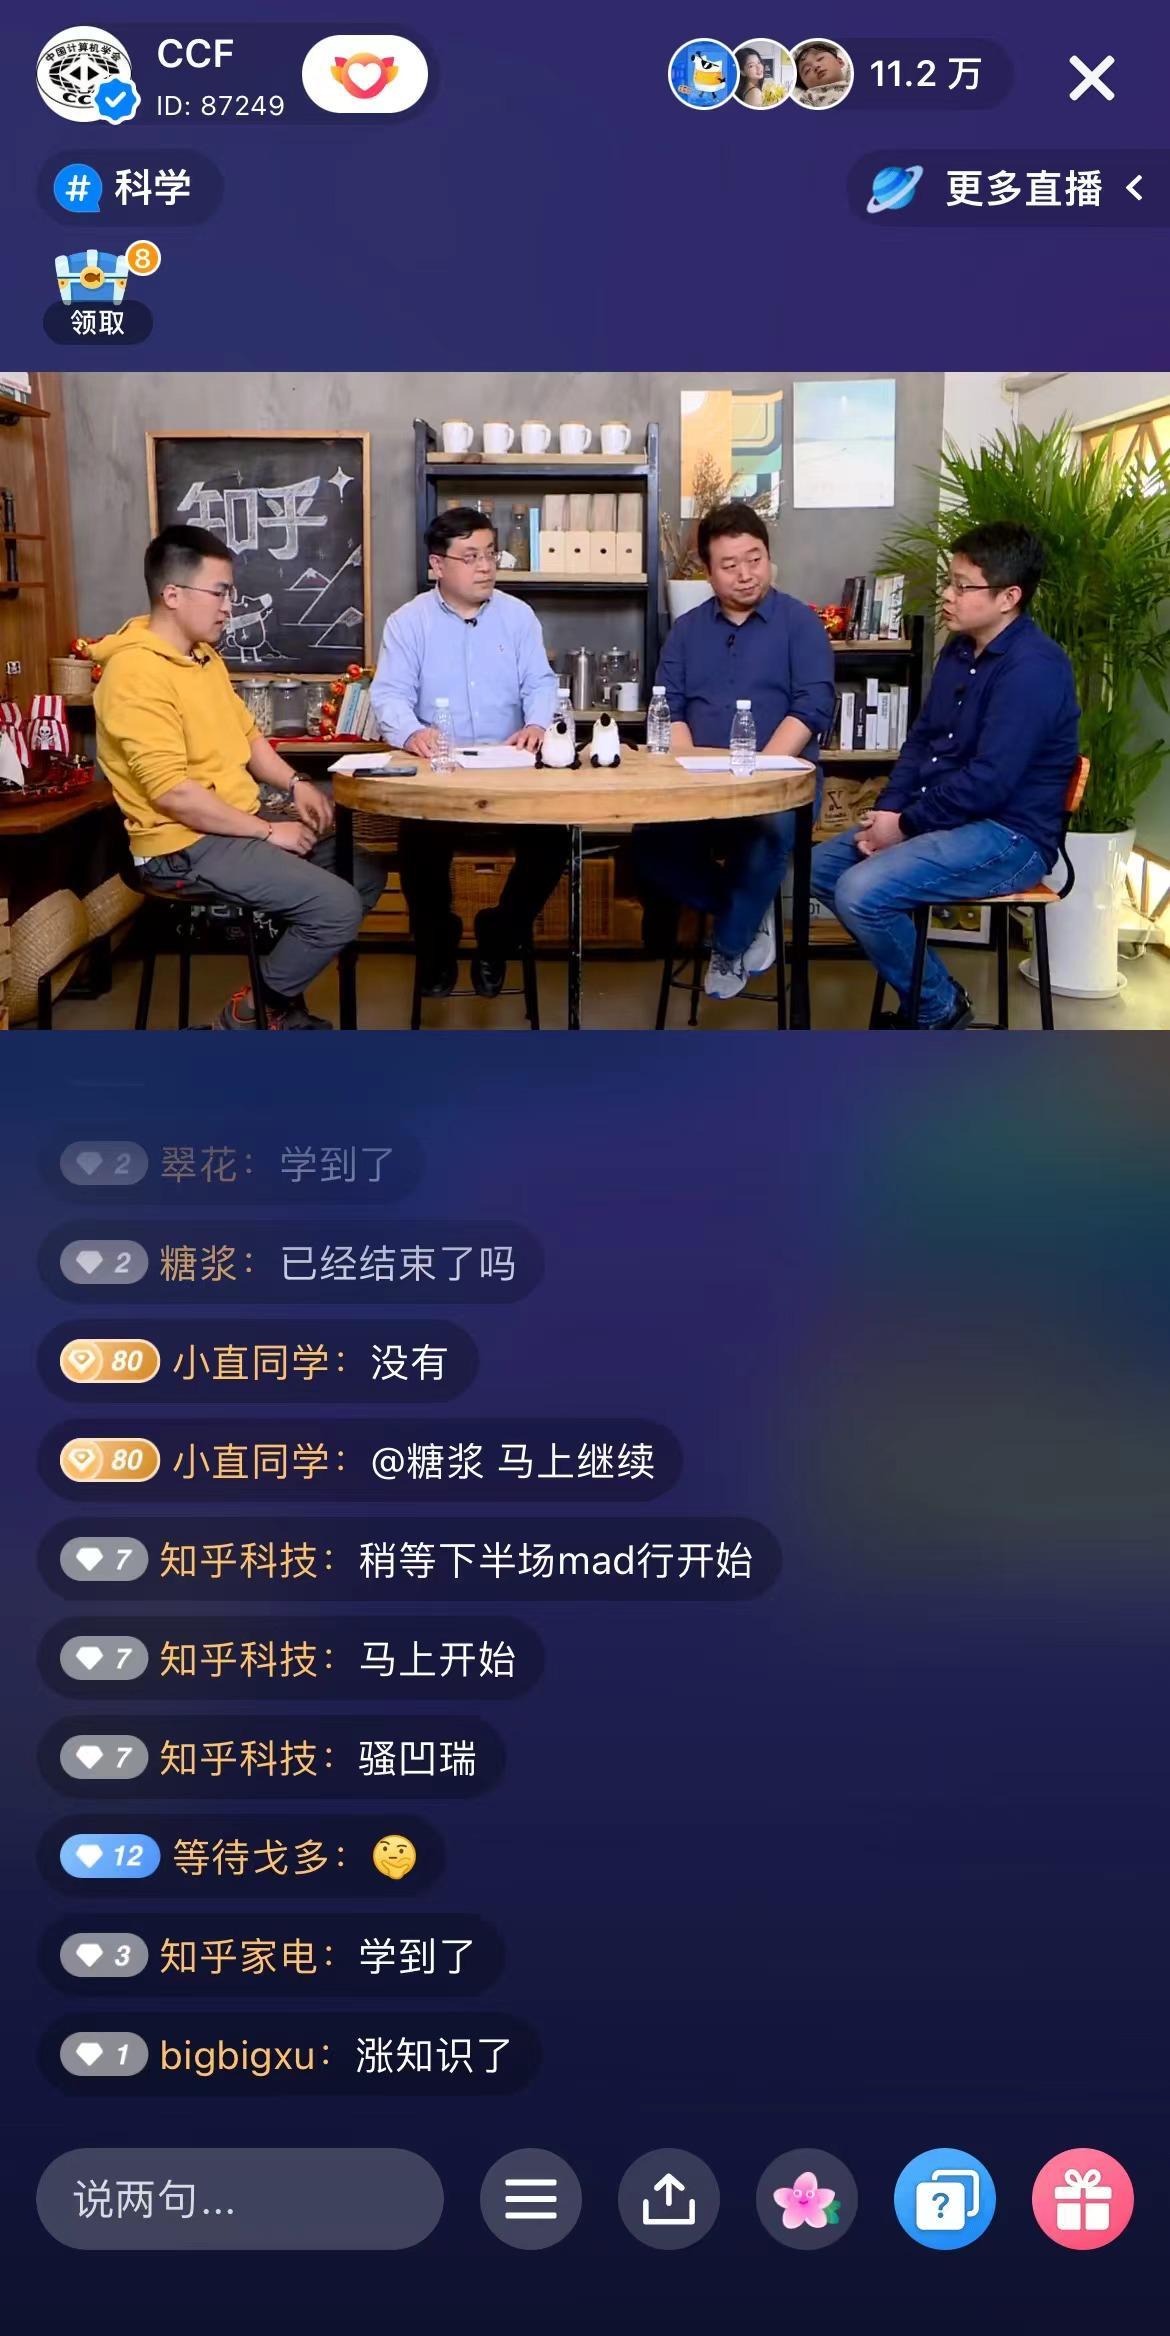 知乎与中国计算机学会联合推出“科盐面对面”科普节目